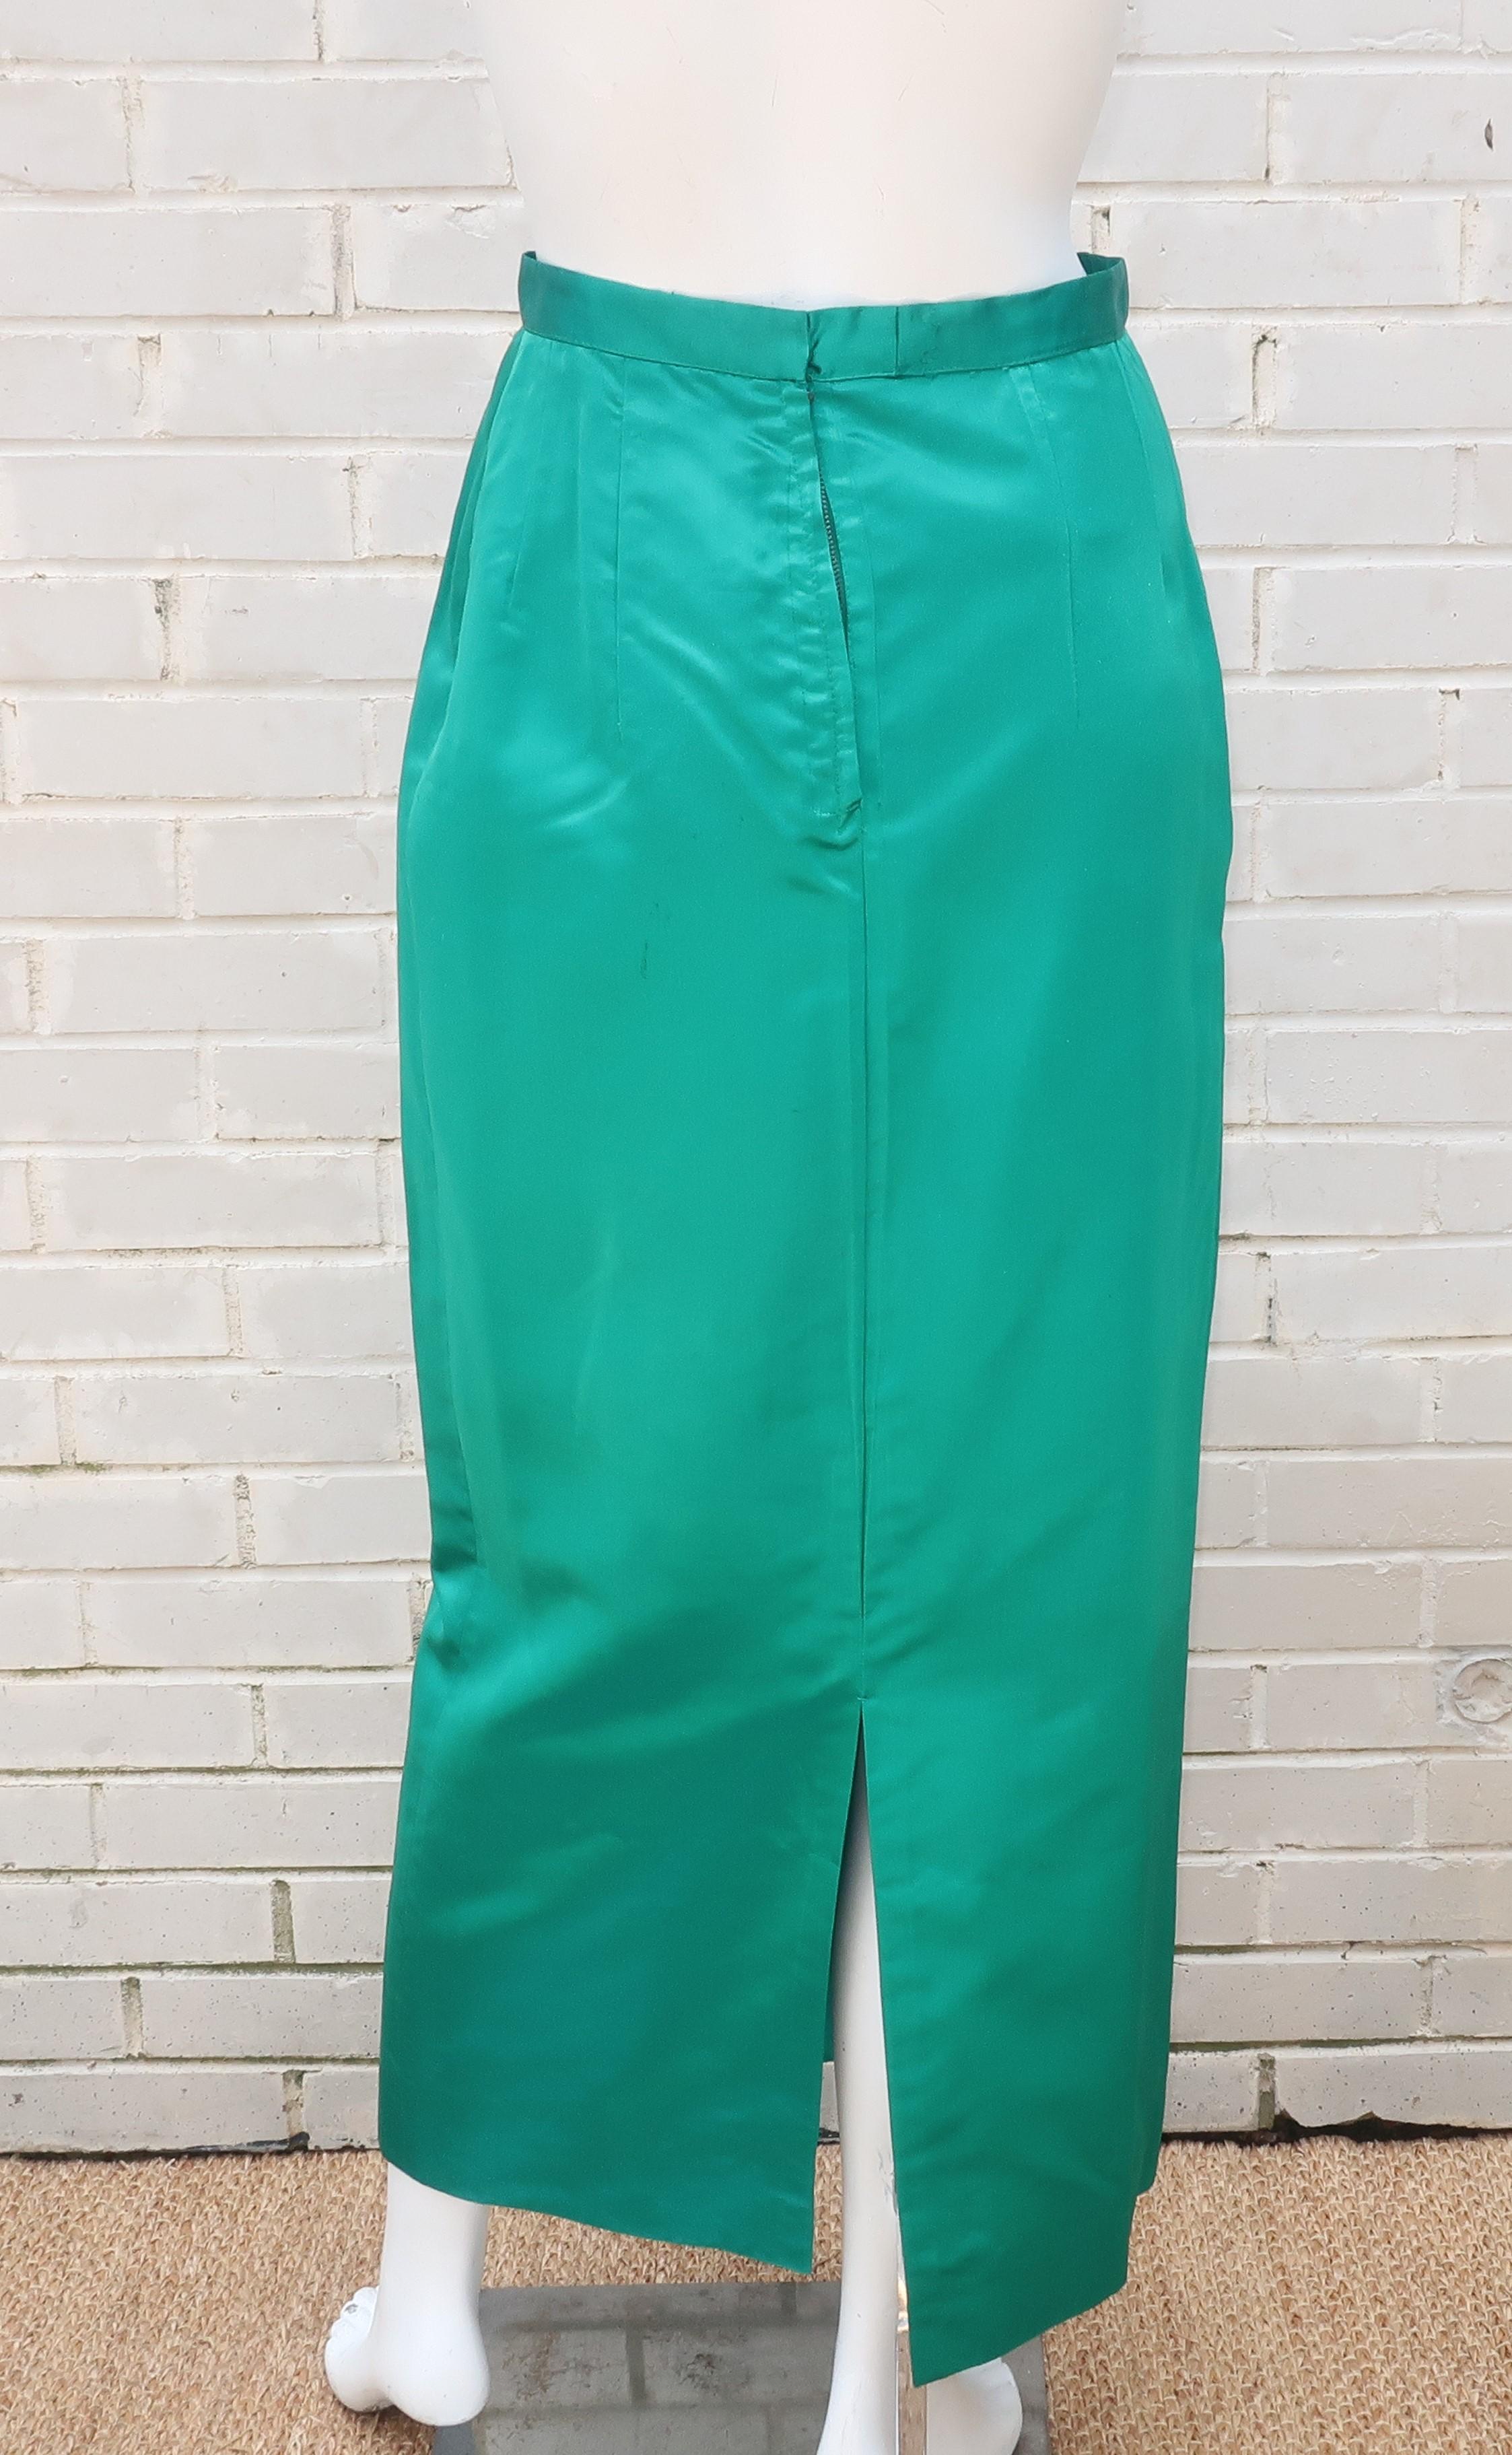 C.1960 British Hong Kong Jade Green Beaded Satin Cropped Top Jacket & Skirt 5